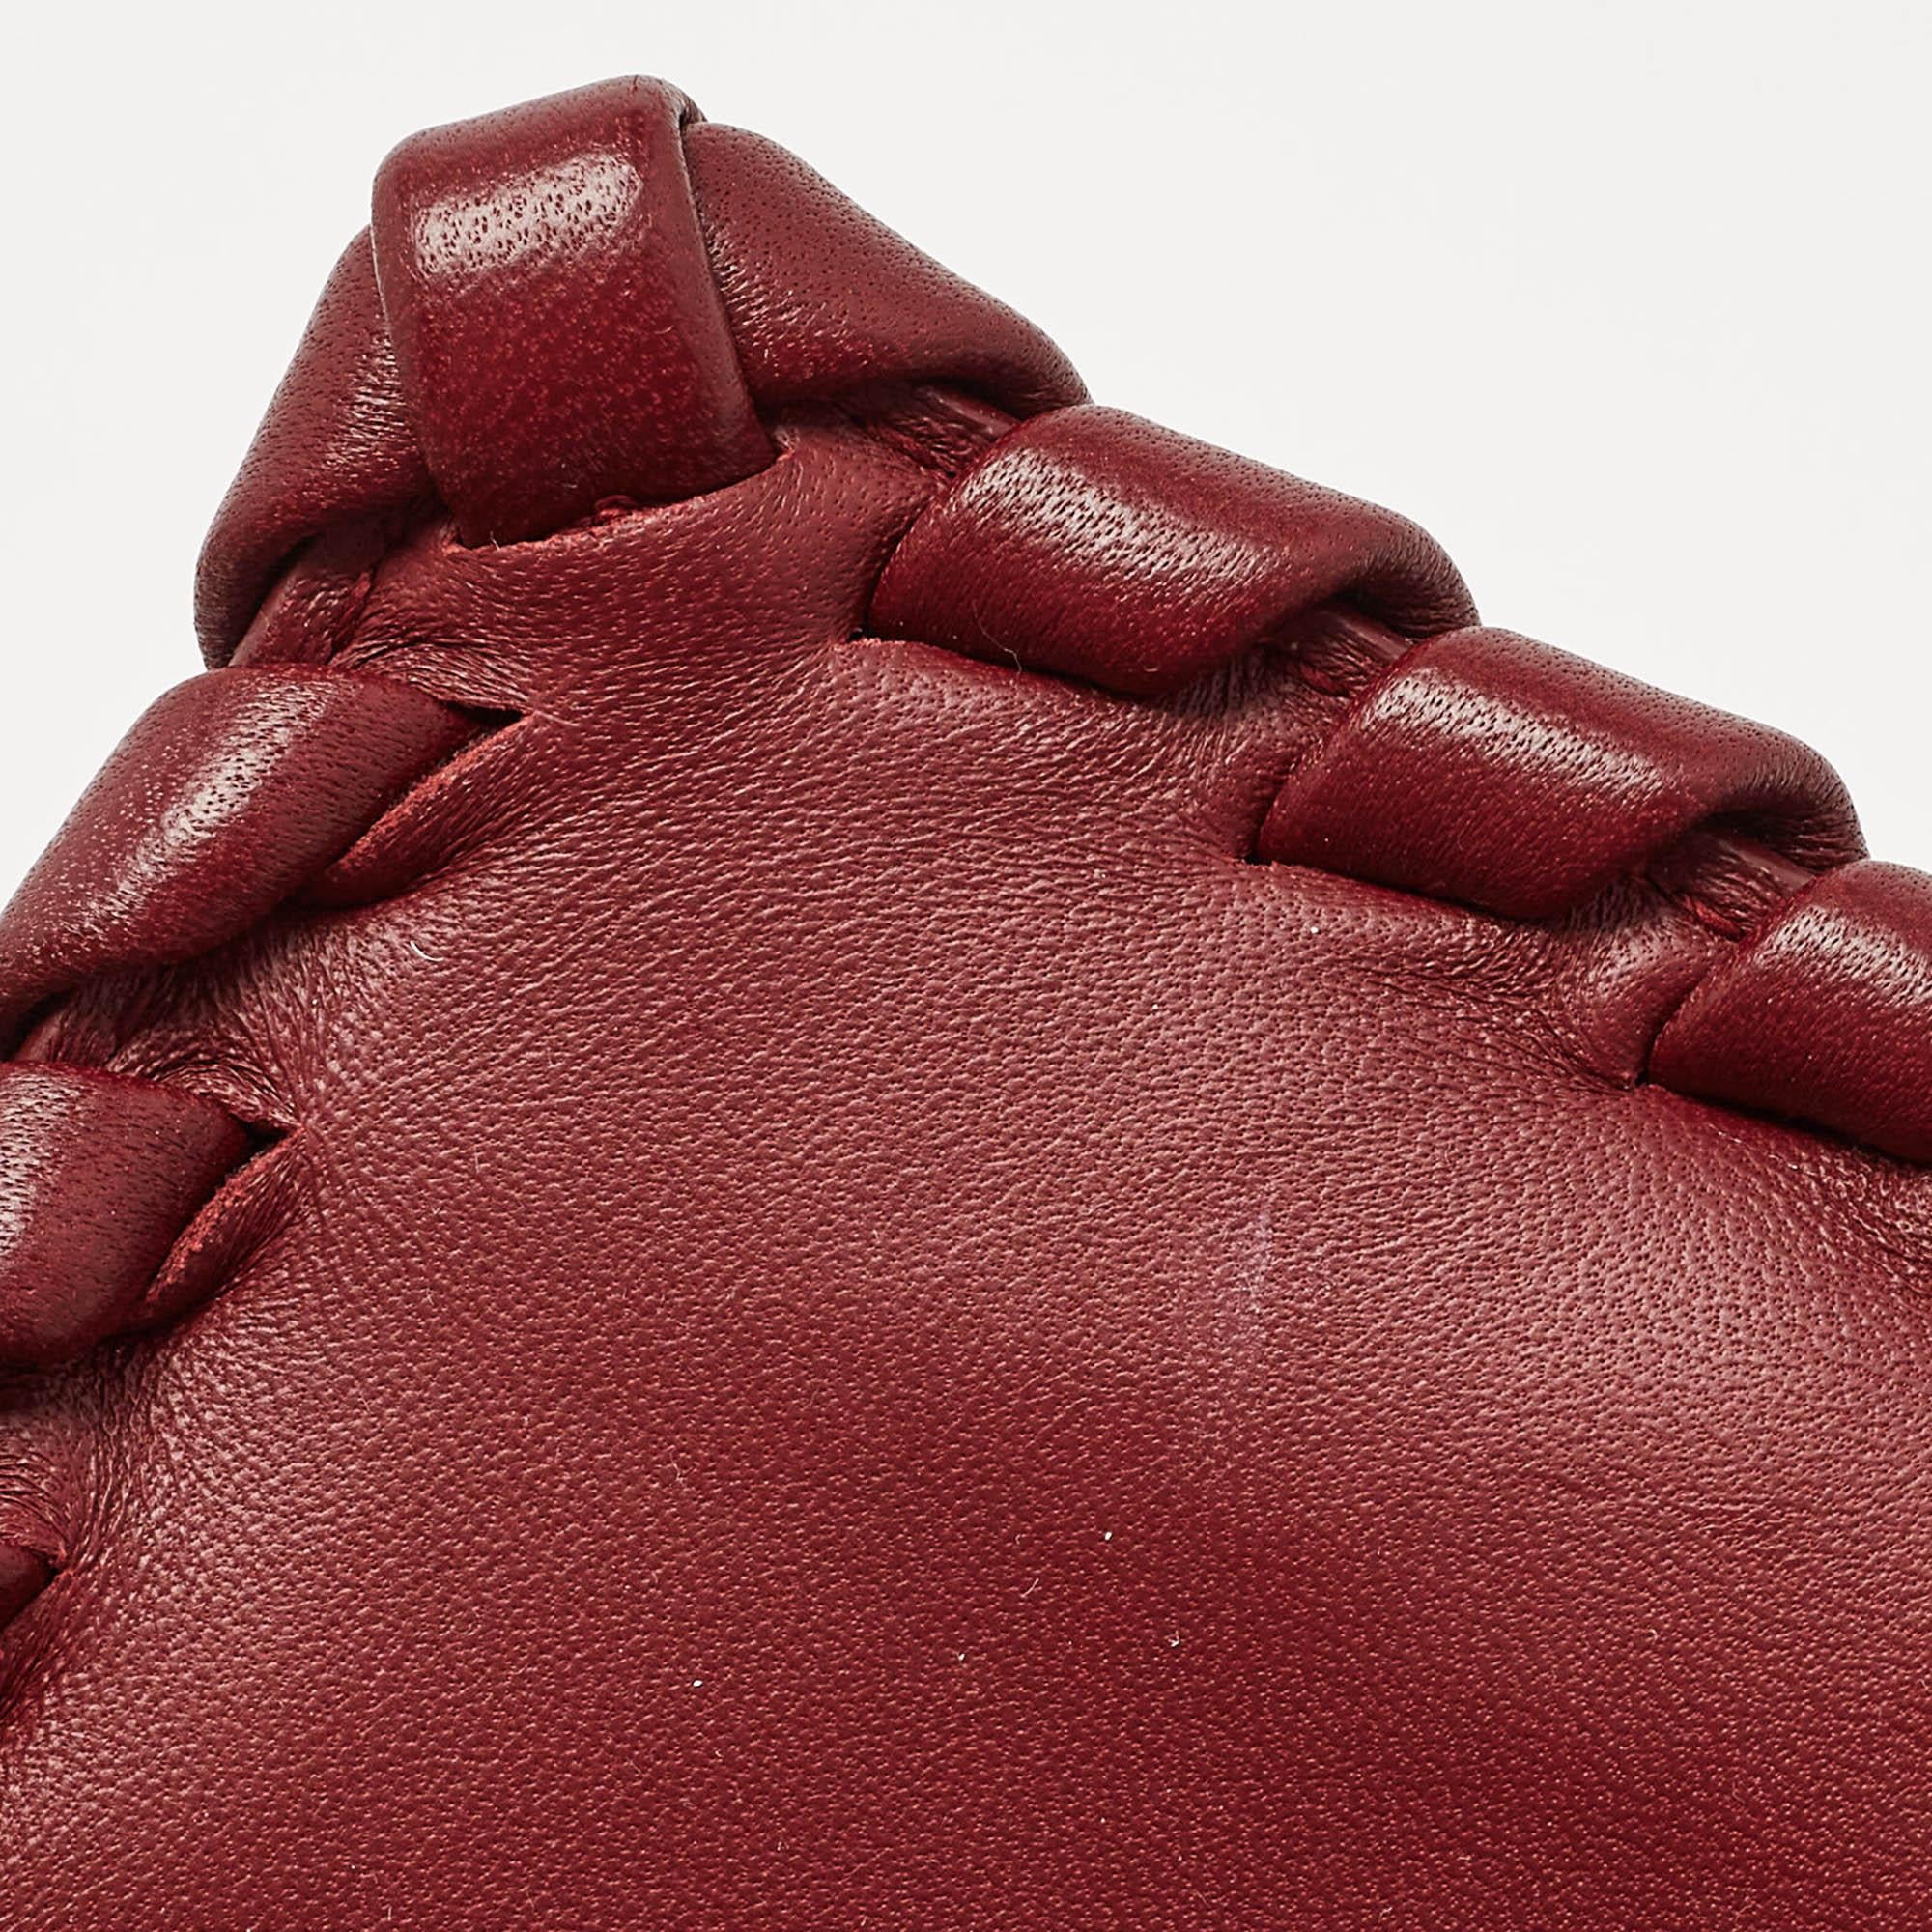 Bottega Veneta Dark Red Intrecciato Leather Small Olimpia Shoulder Bag In Good Condition For Sale In Dubai, Al Qouz 2